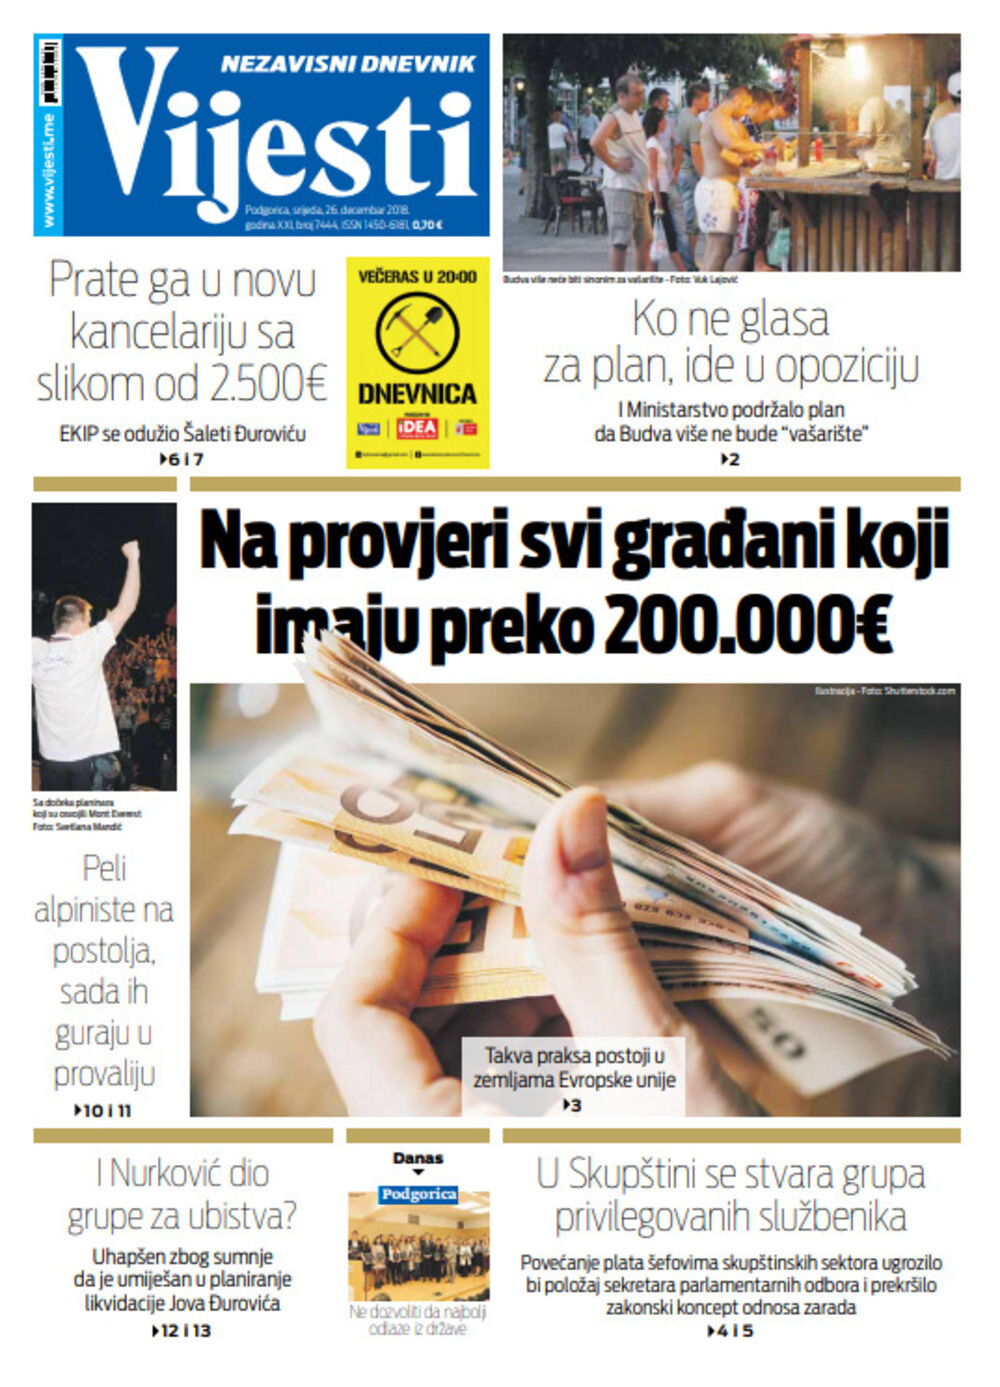 Naslovna strana "Vijesti" za 26. decembar, Foto: Vijesti